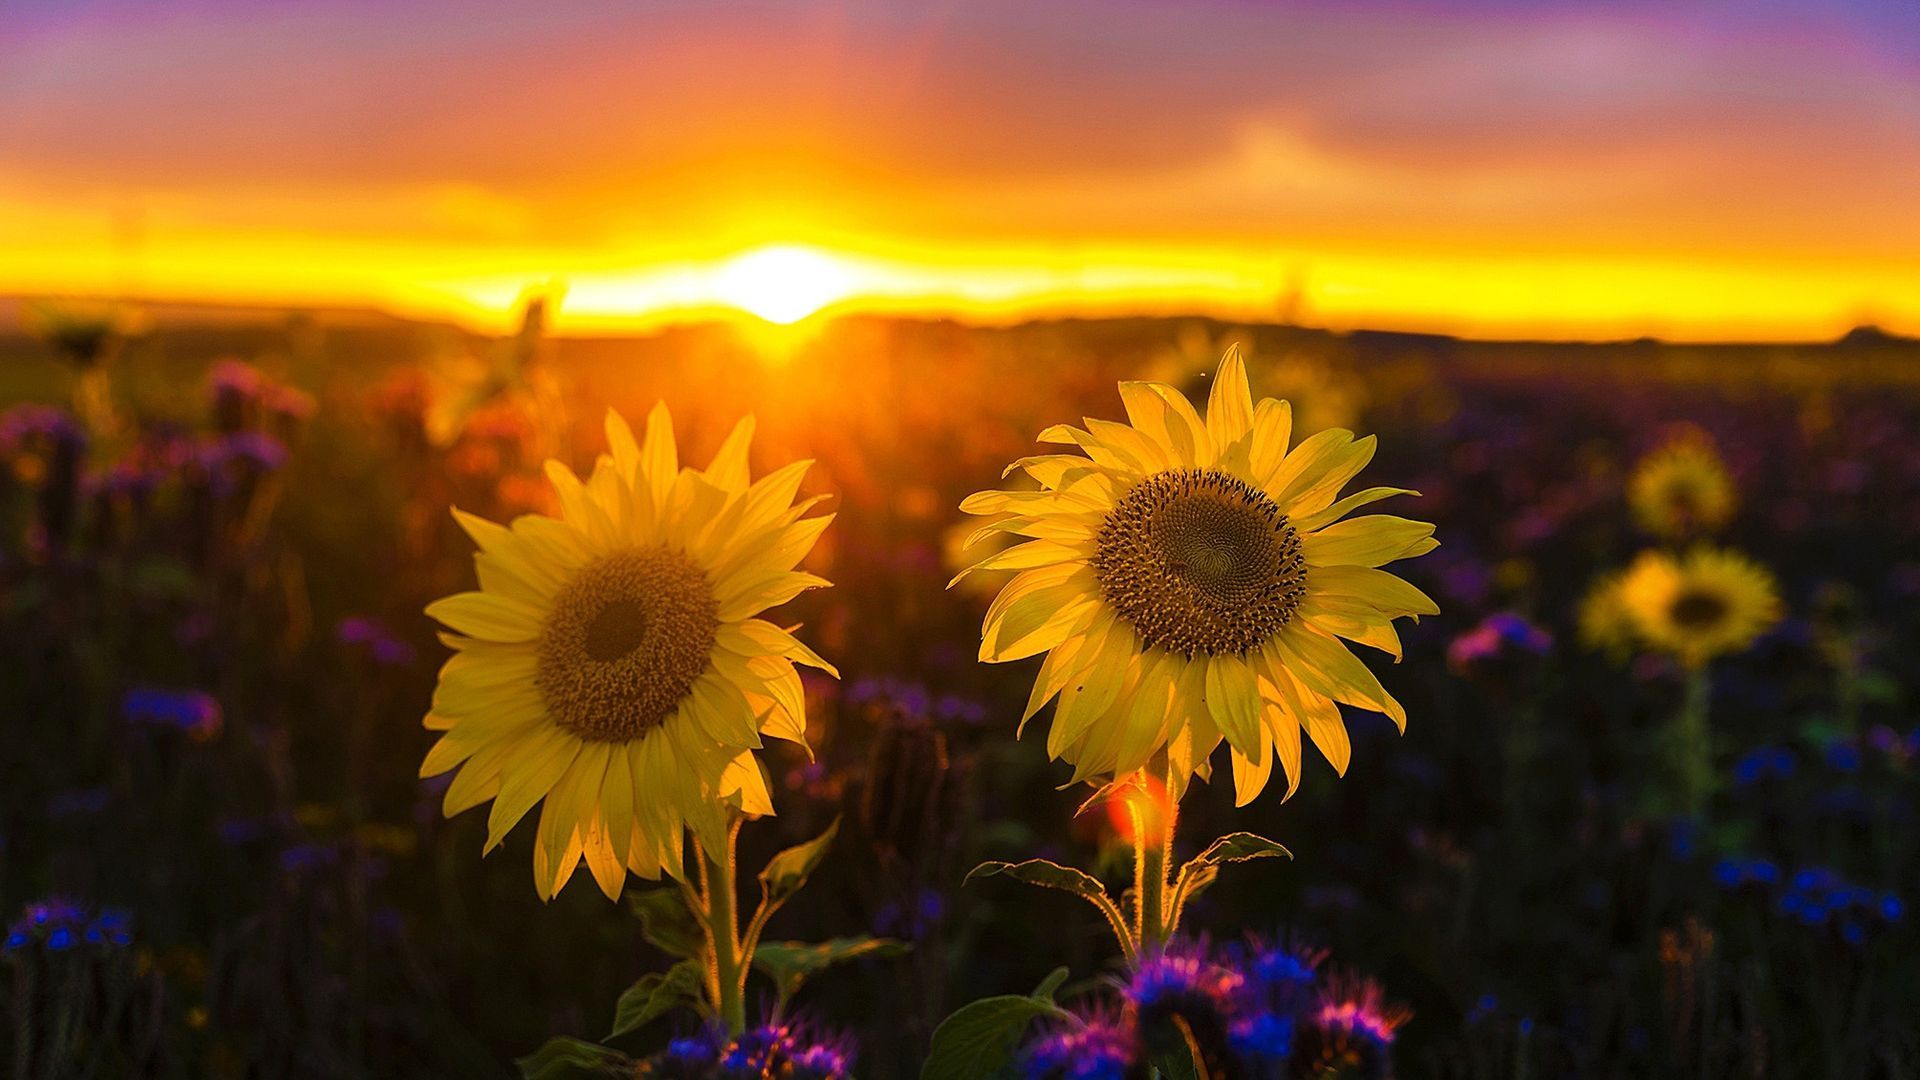 Sunflower Sunset Wallpaper - Streaming de fondo de pantalla